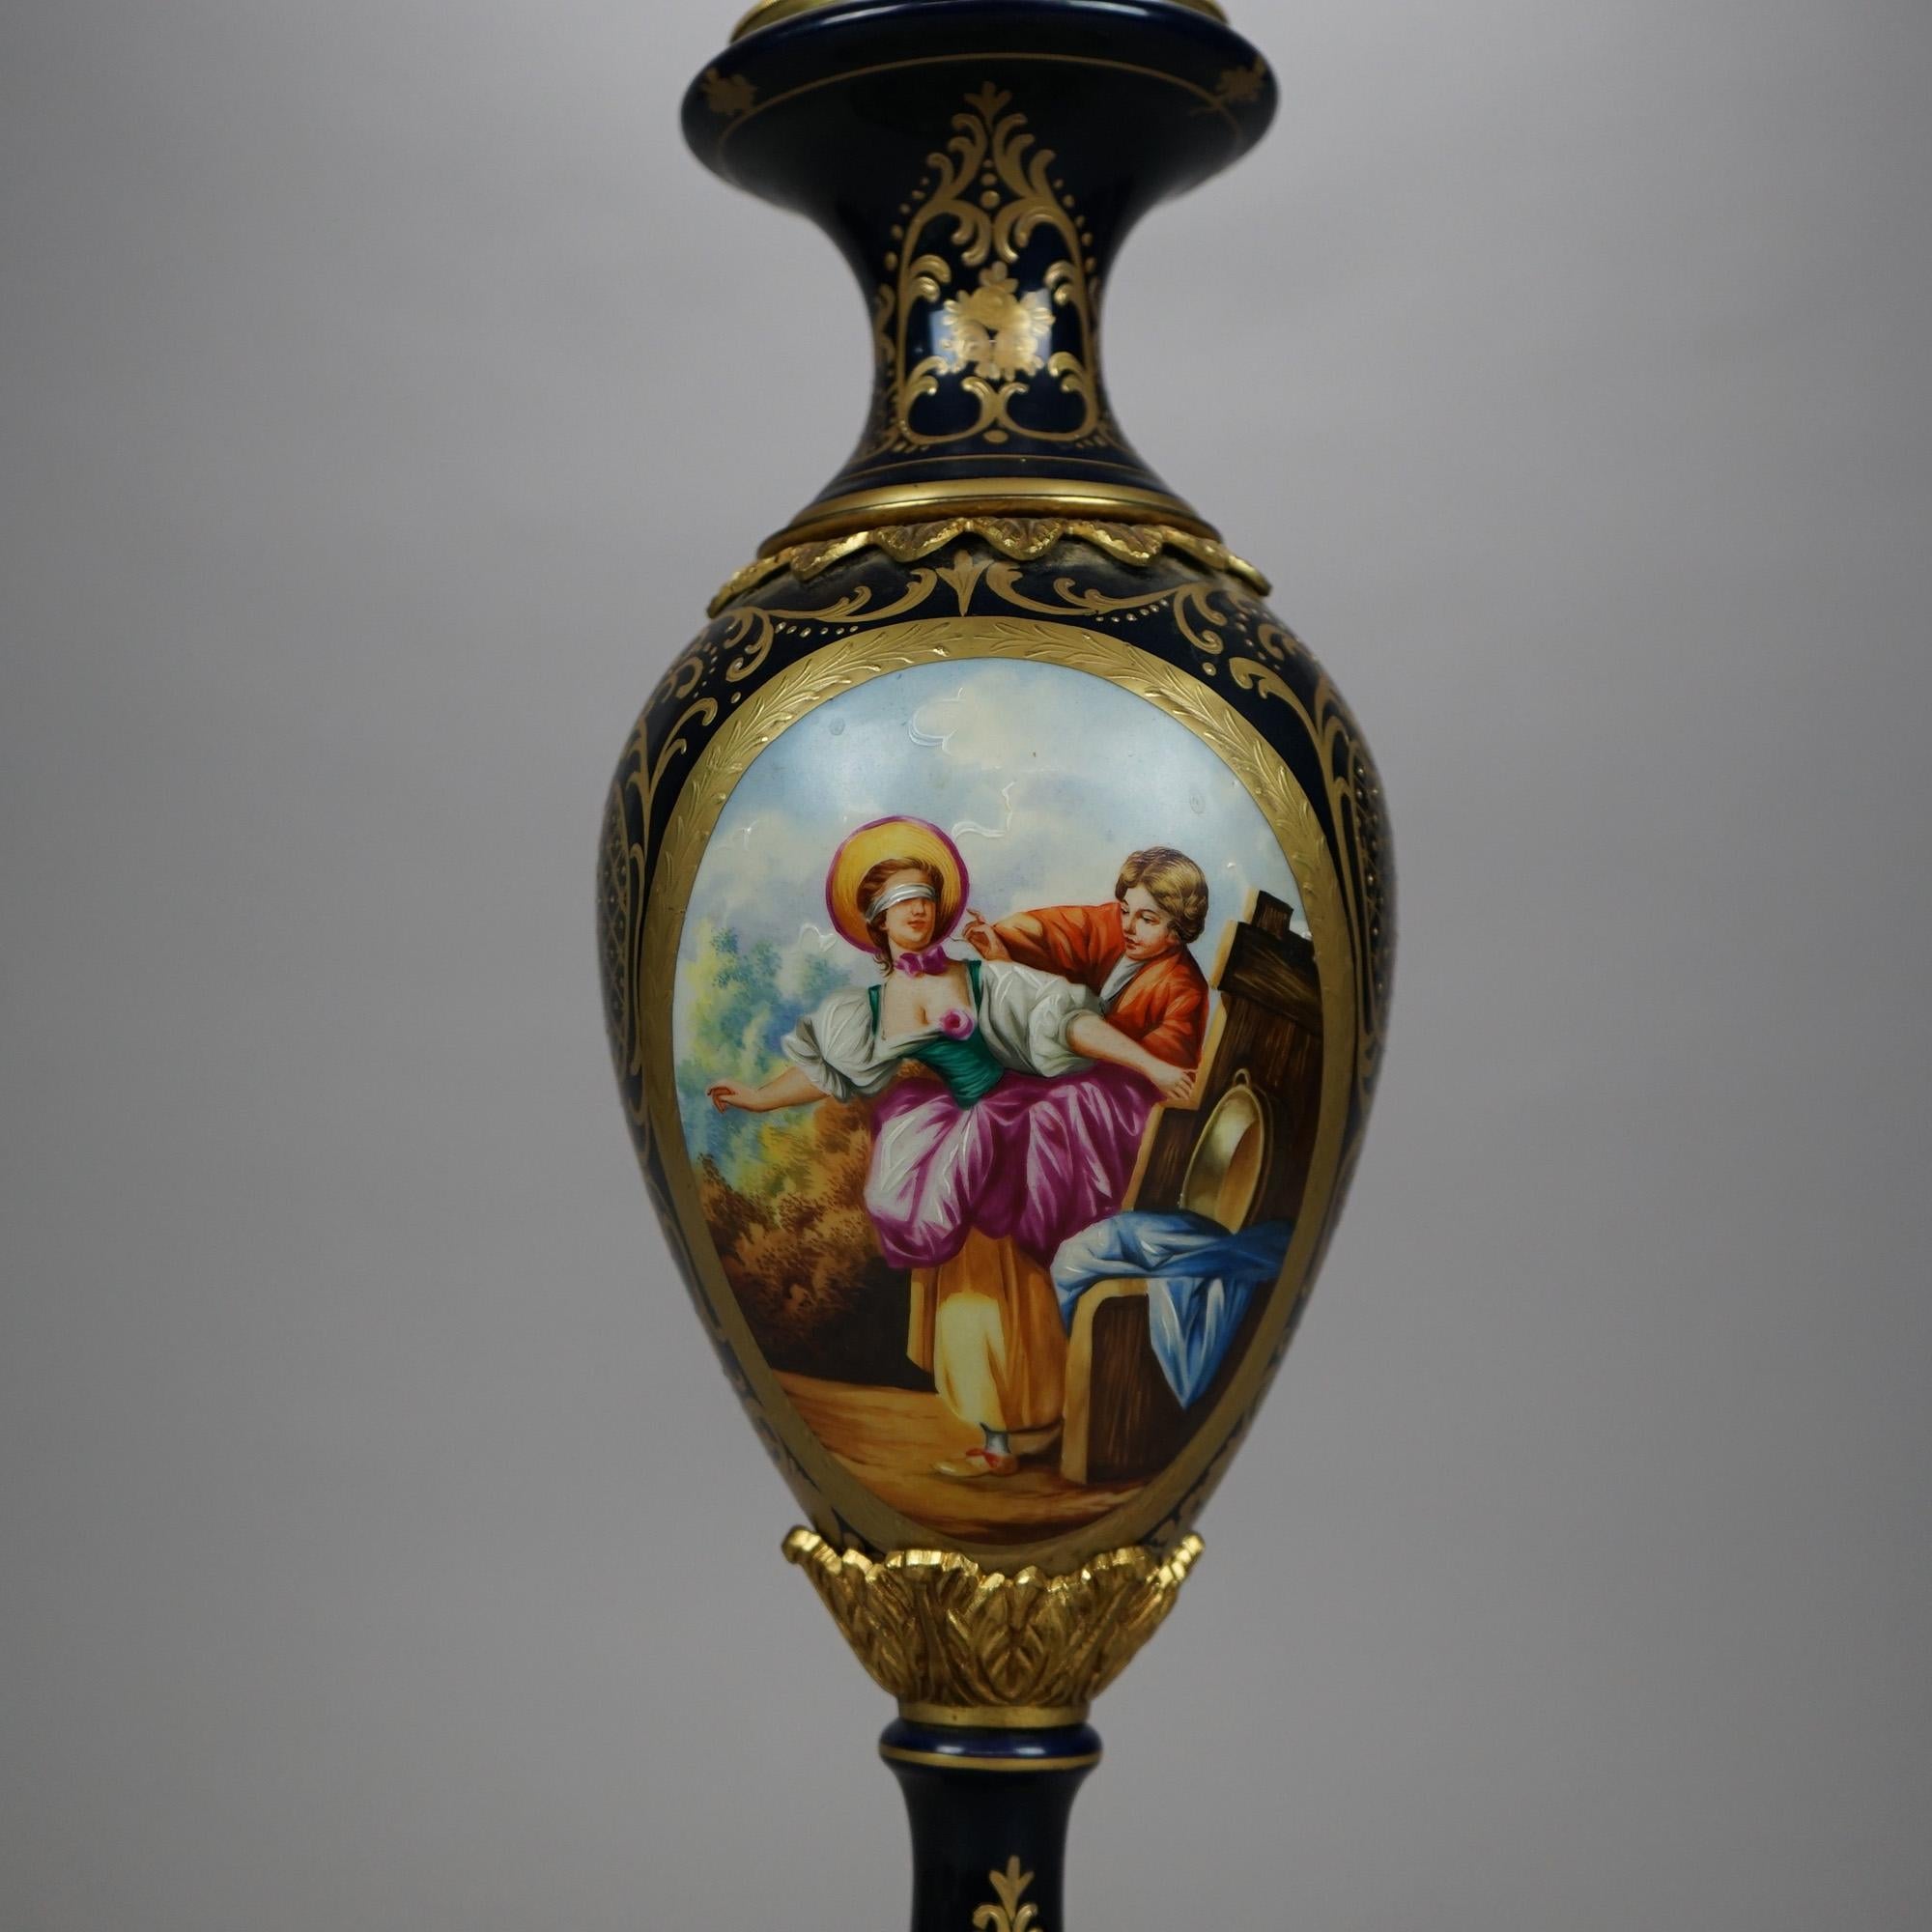 20th Century French Sèvres Porcelain Cobalt & Gilt Decorated Portrait Vase 20th C